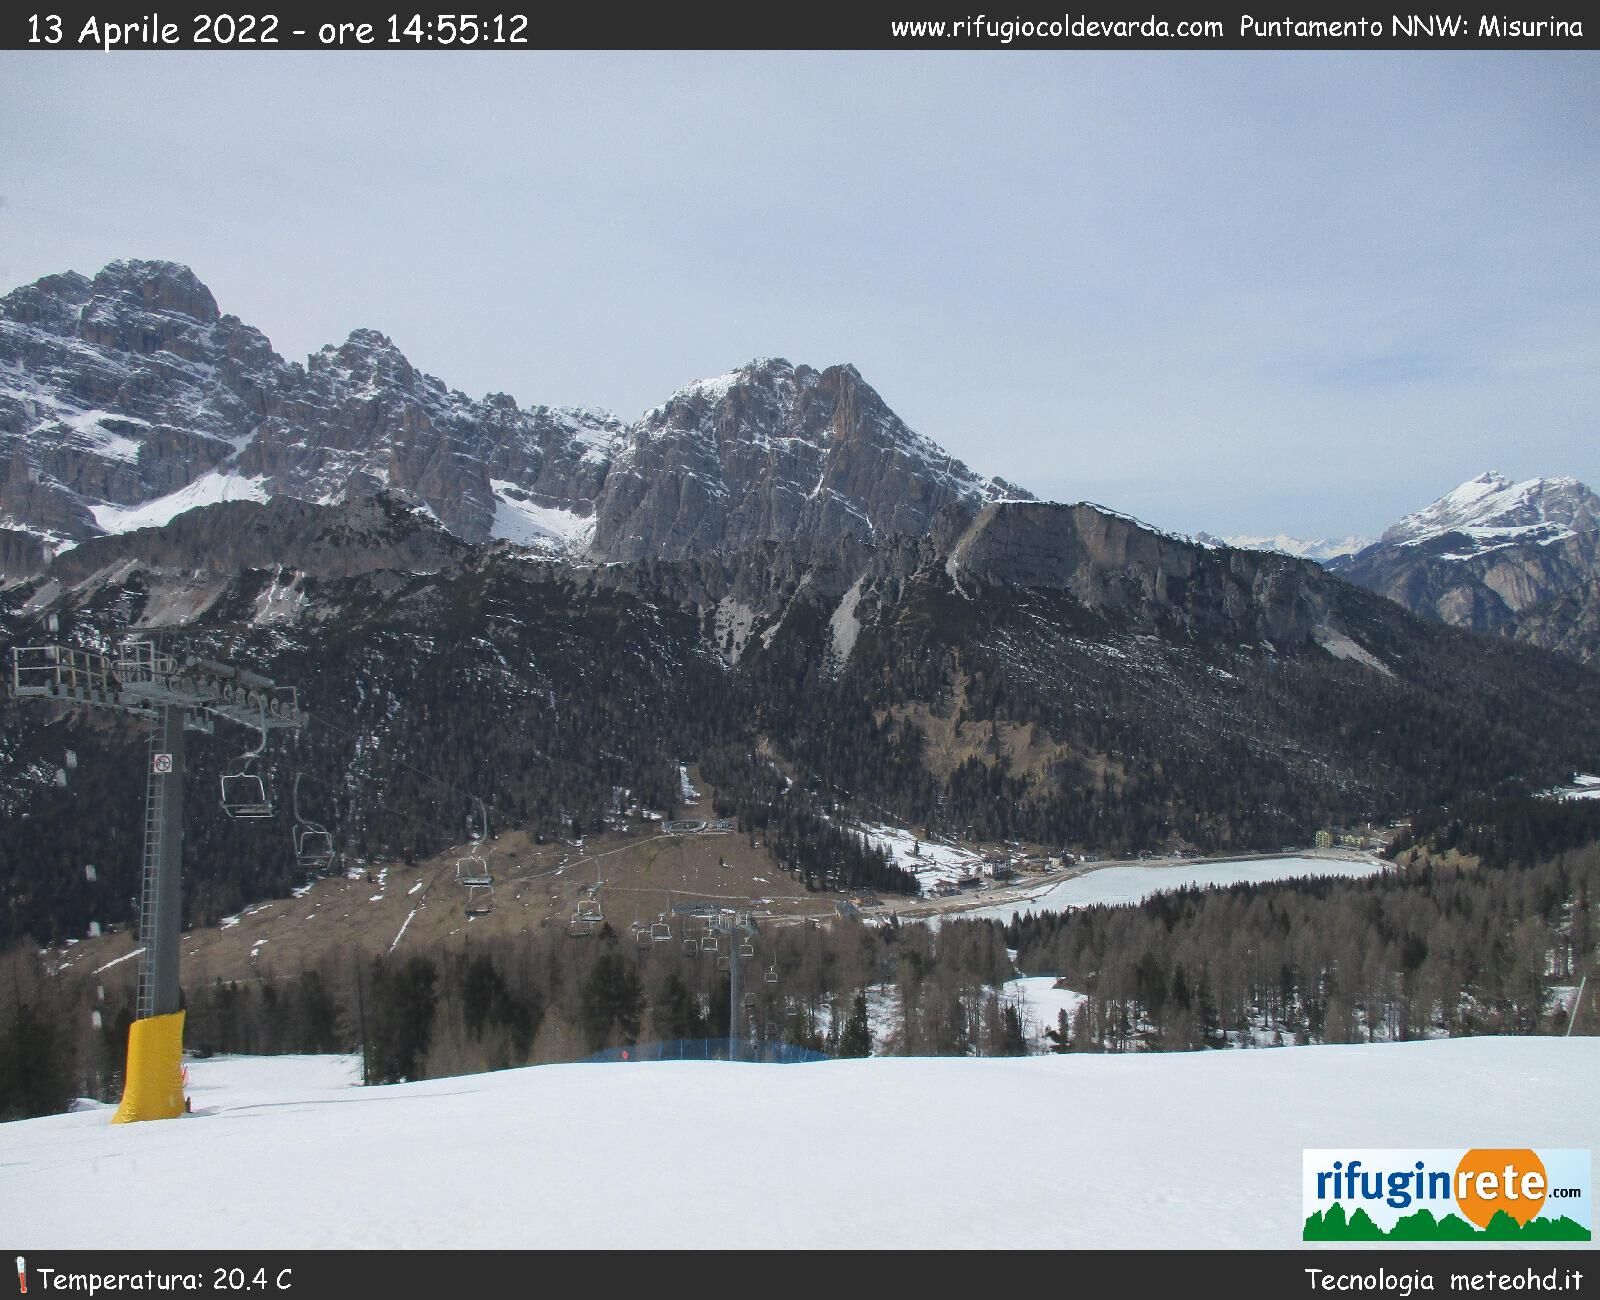 webcam Rifugio Col de Varda, webcam Auronzo di Cadore, webcam provincia di Belluno, 
                                            webcam Veneto, webcam alpi